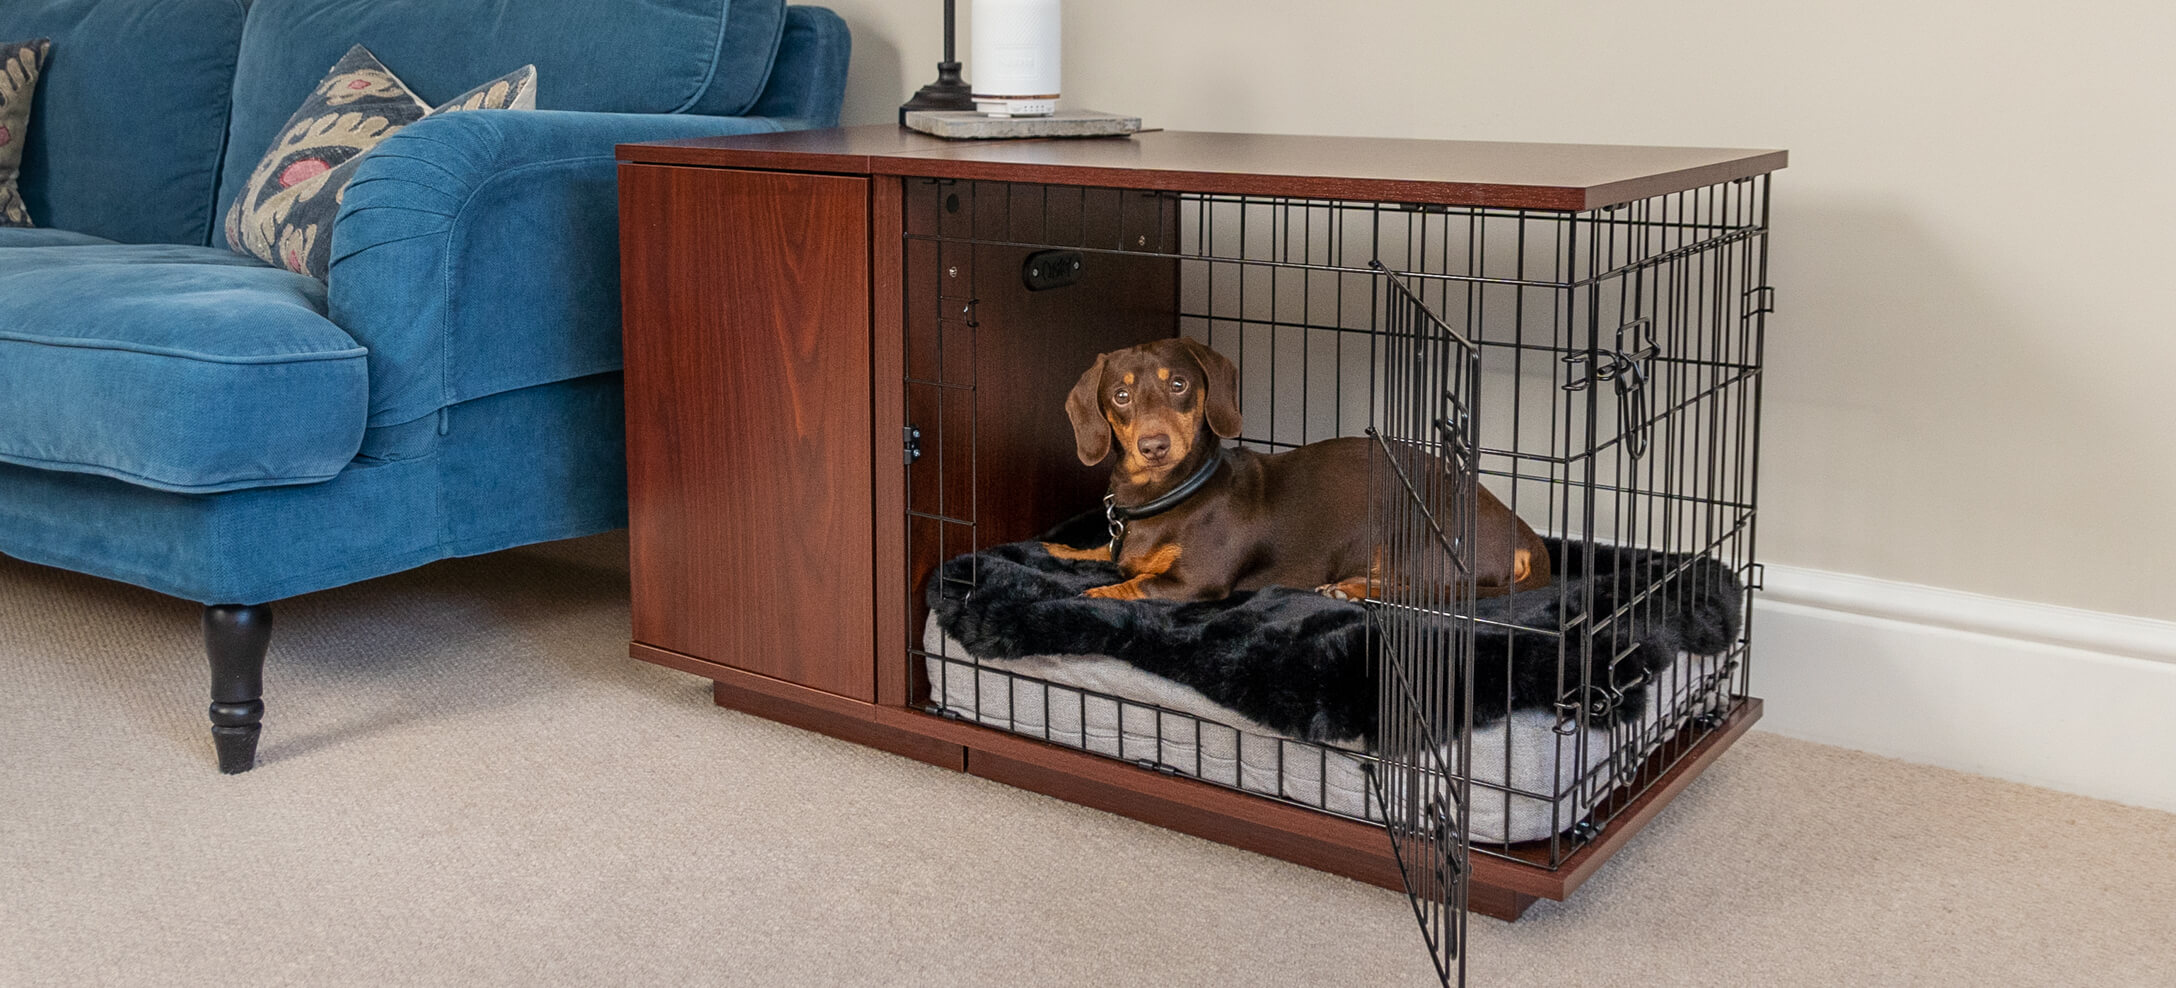 Une cage pour chien crée un espace sûr pour votre animal, à l’écart de l’agitation de la maison